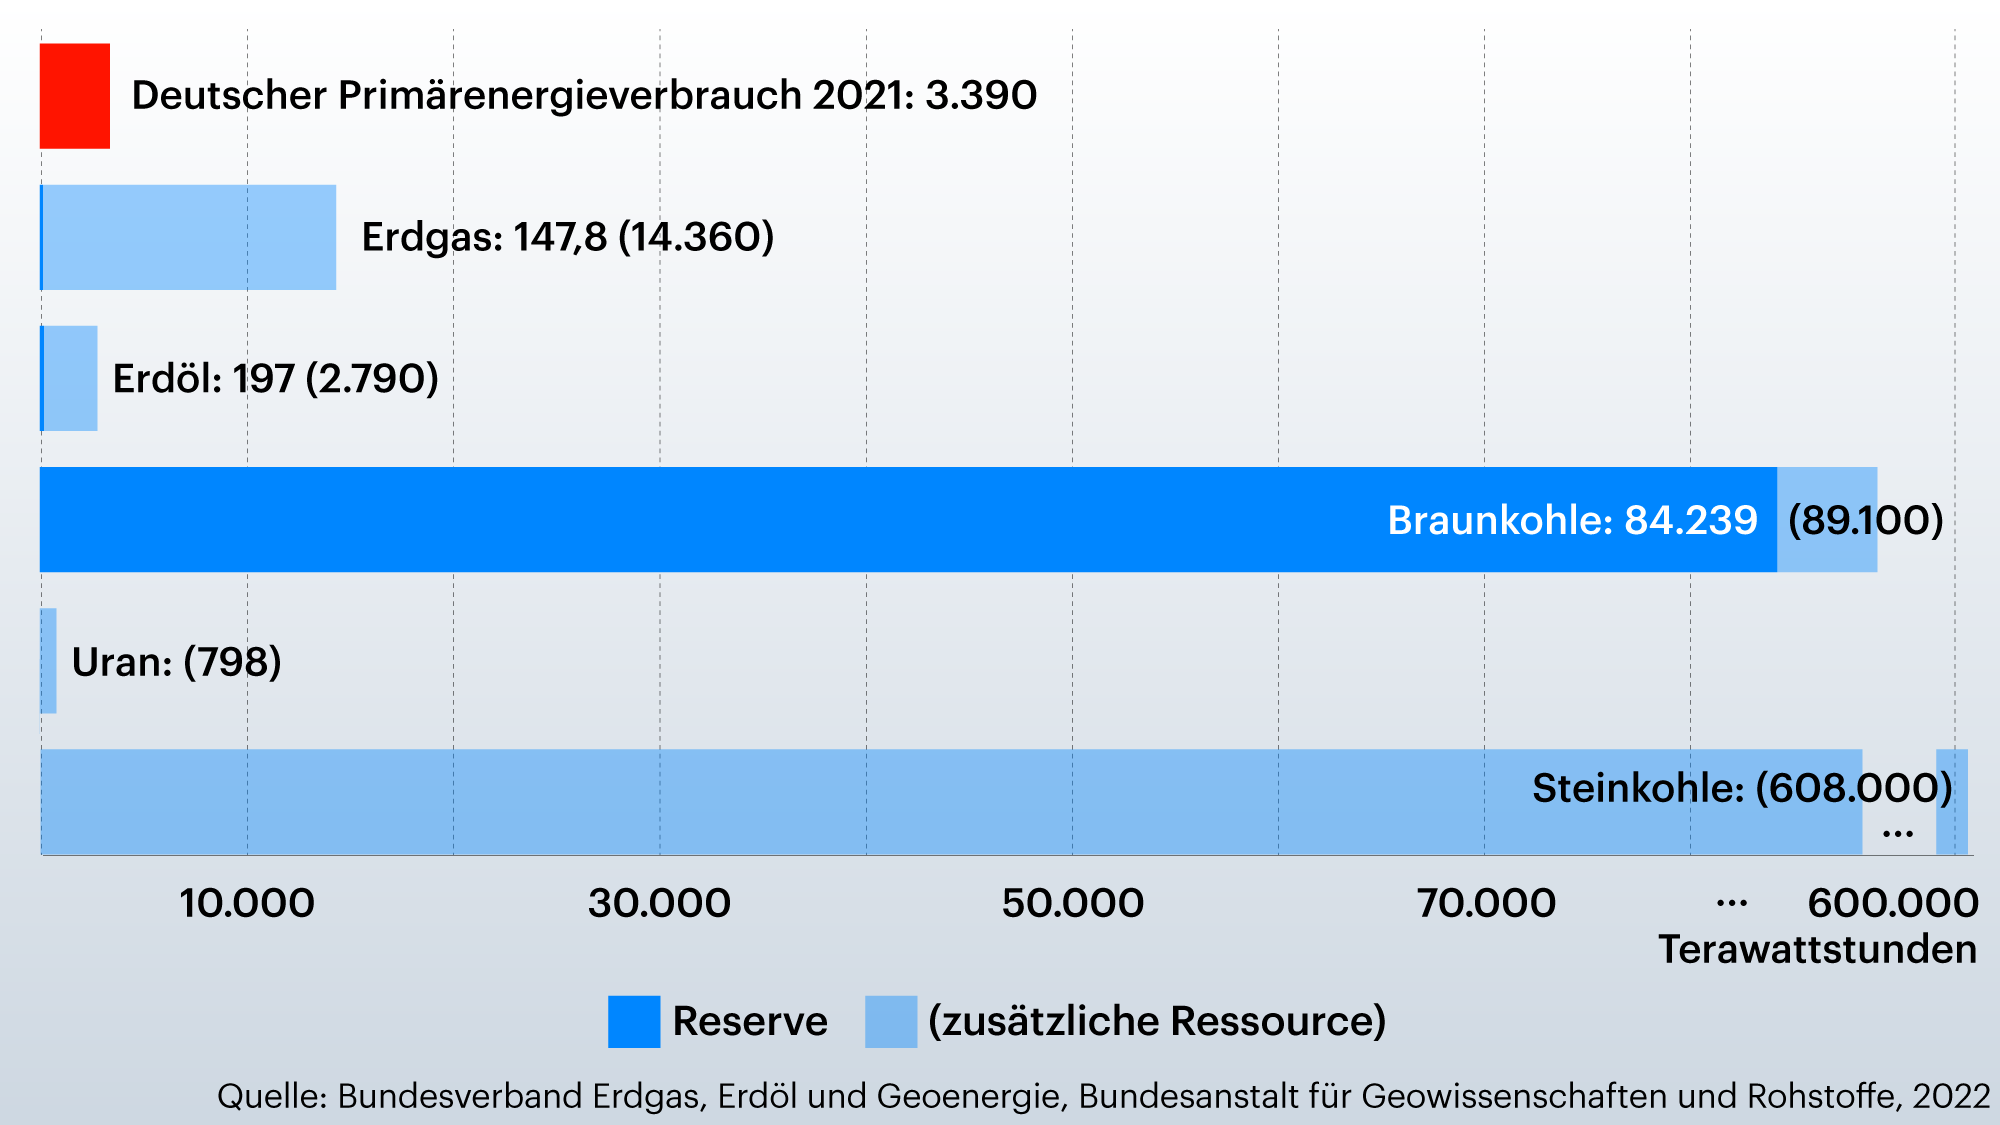 Die Grafik stellt den Energiegehalt der deutschen Bodenschätzen in Bezug, gemessen in Terawattstunden (TWh). Die Werte lauten: 
Deutscher Primärenergieverbrauch 2021: 3.390 TWh
Erdgas: 147,8 TWh Reserve, 14.360 TWh zus. Ressource
Erdöl: 197 TWh Reserve, 2.790 TWh zus. Ressource
Braunkohle: 84.239 TWh Reserve, 89.100 TWh zus. Ressource
Uran: 798 TWh zus. Ressource
Steinkohle: 608.000 TWh zus. Ressource
